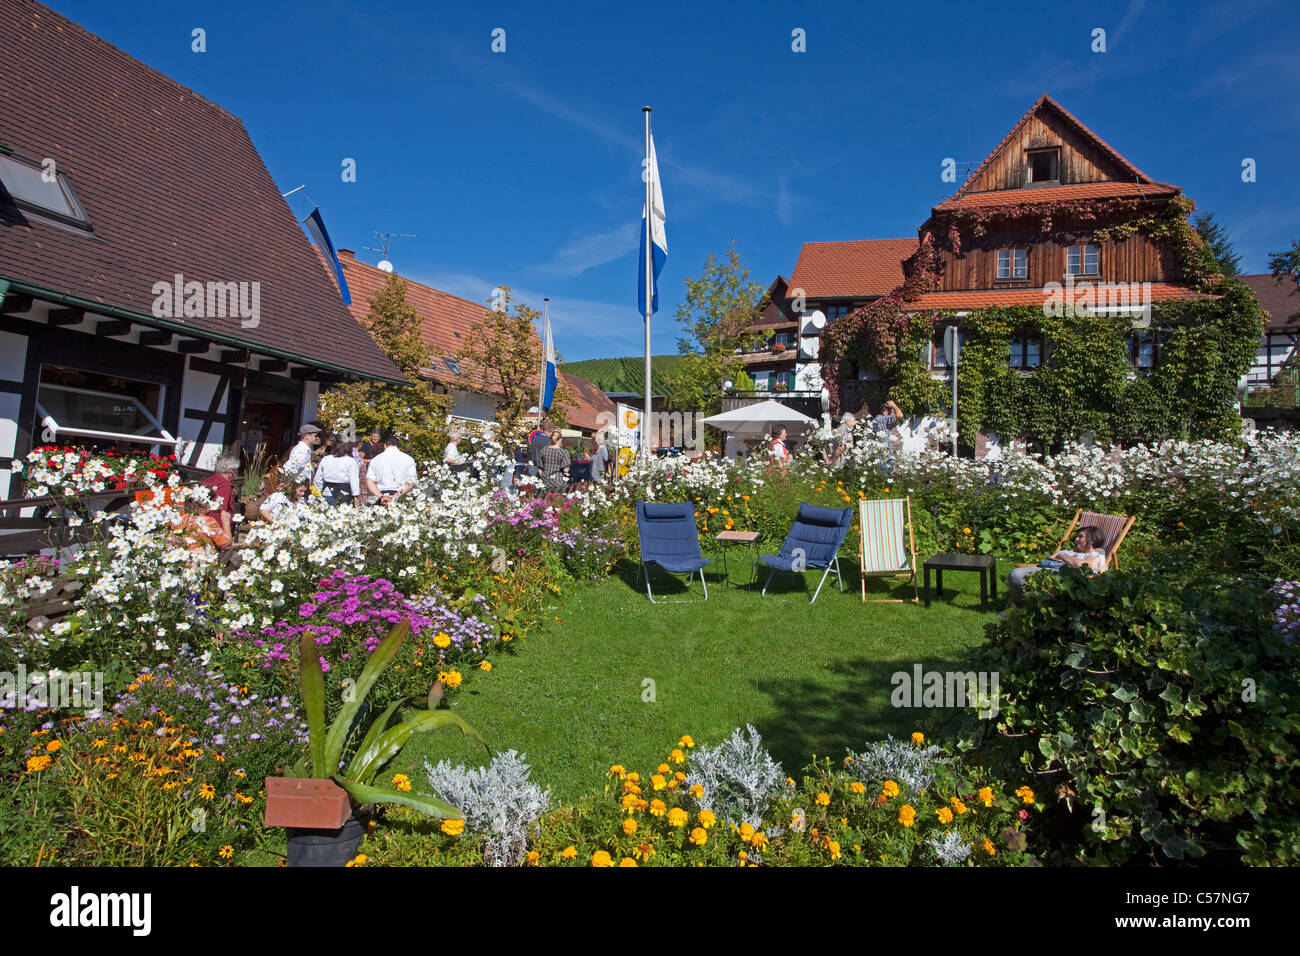 Bauernhaus und Bauerngarten in Sasbachwalden, farmer house and flower garden Stock Photo